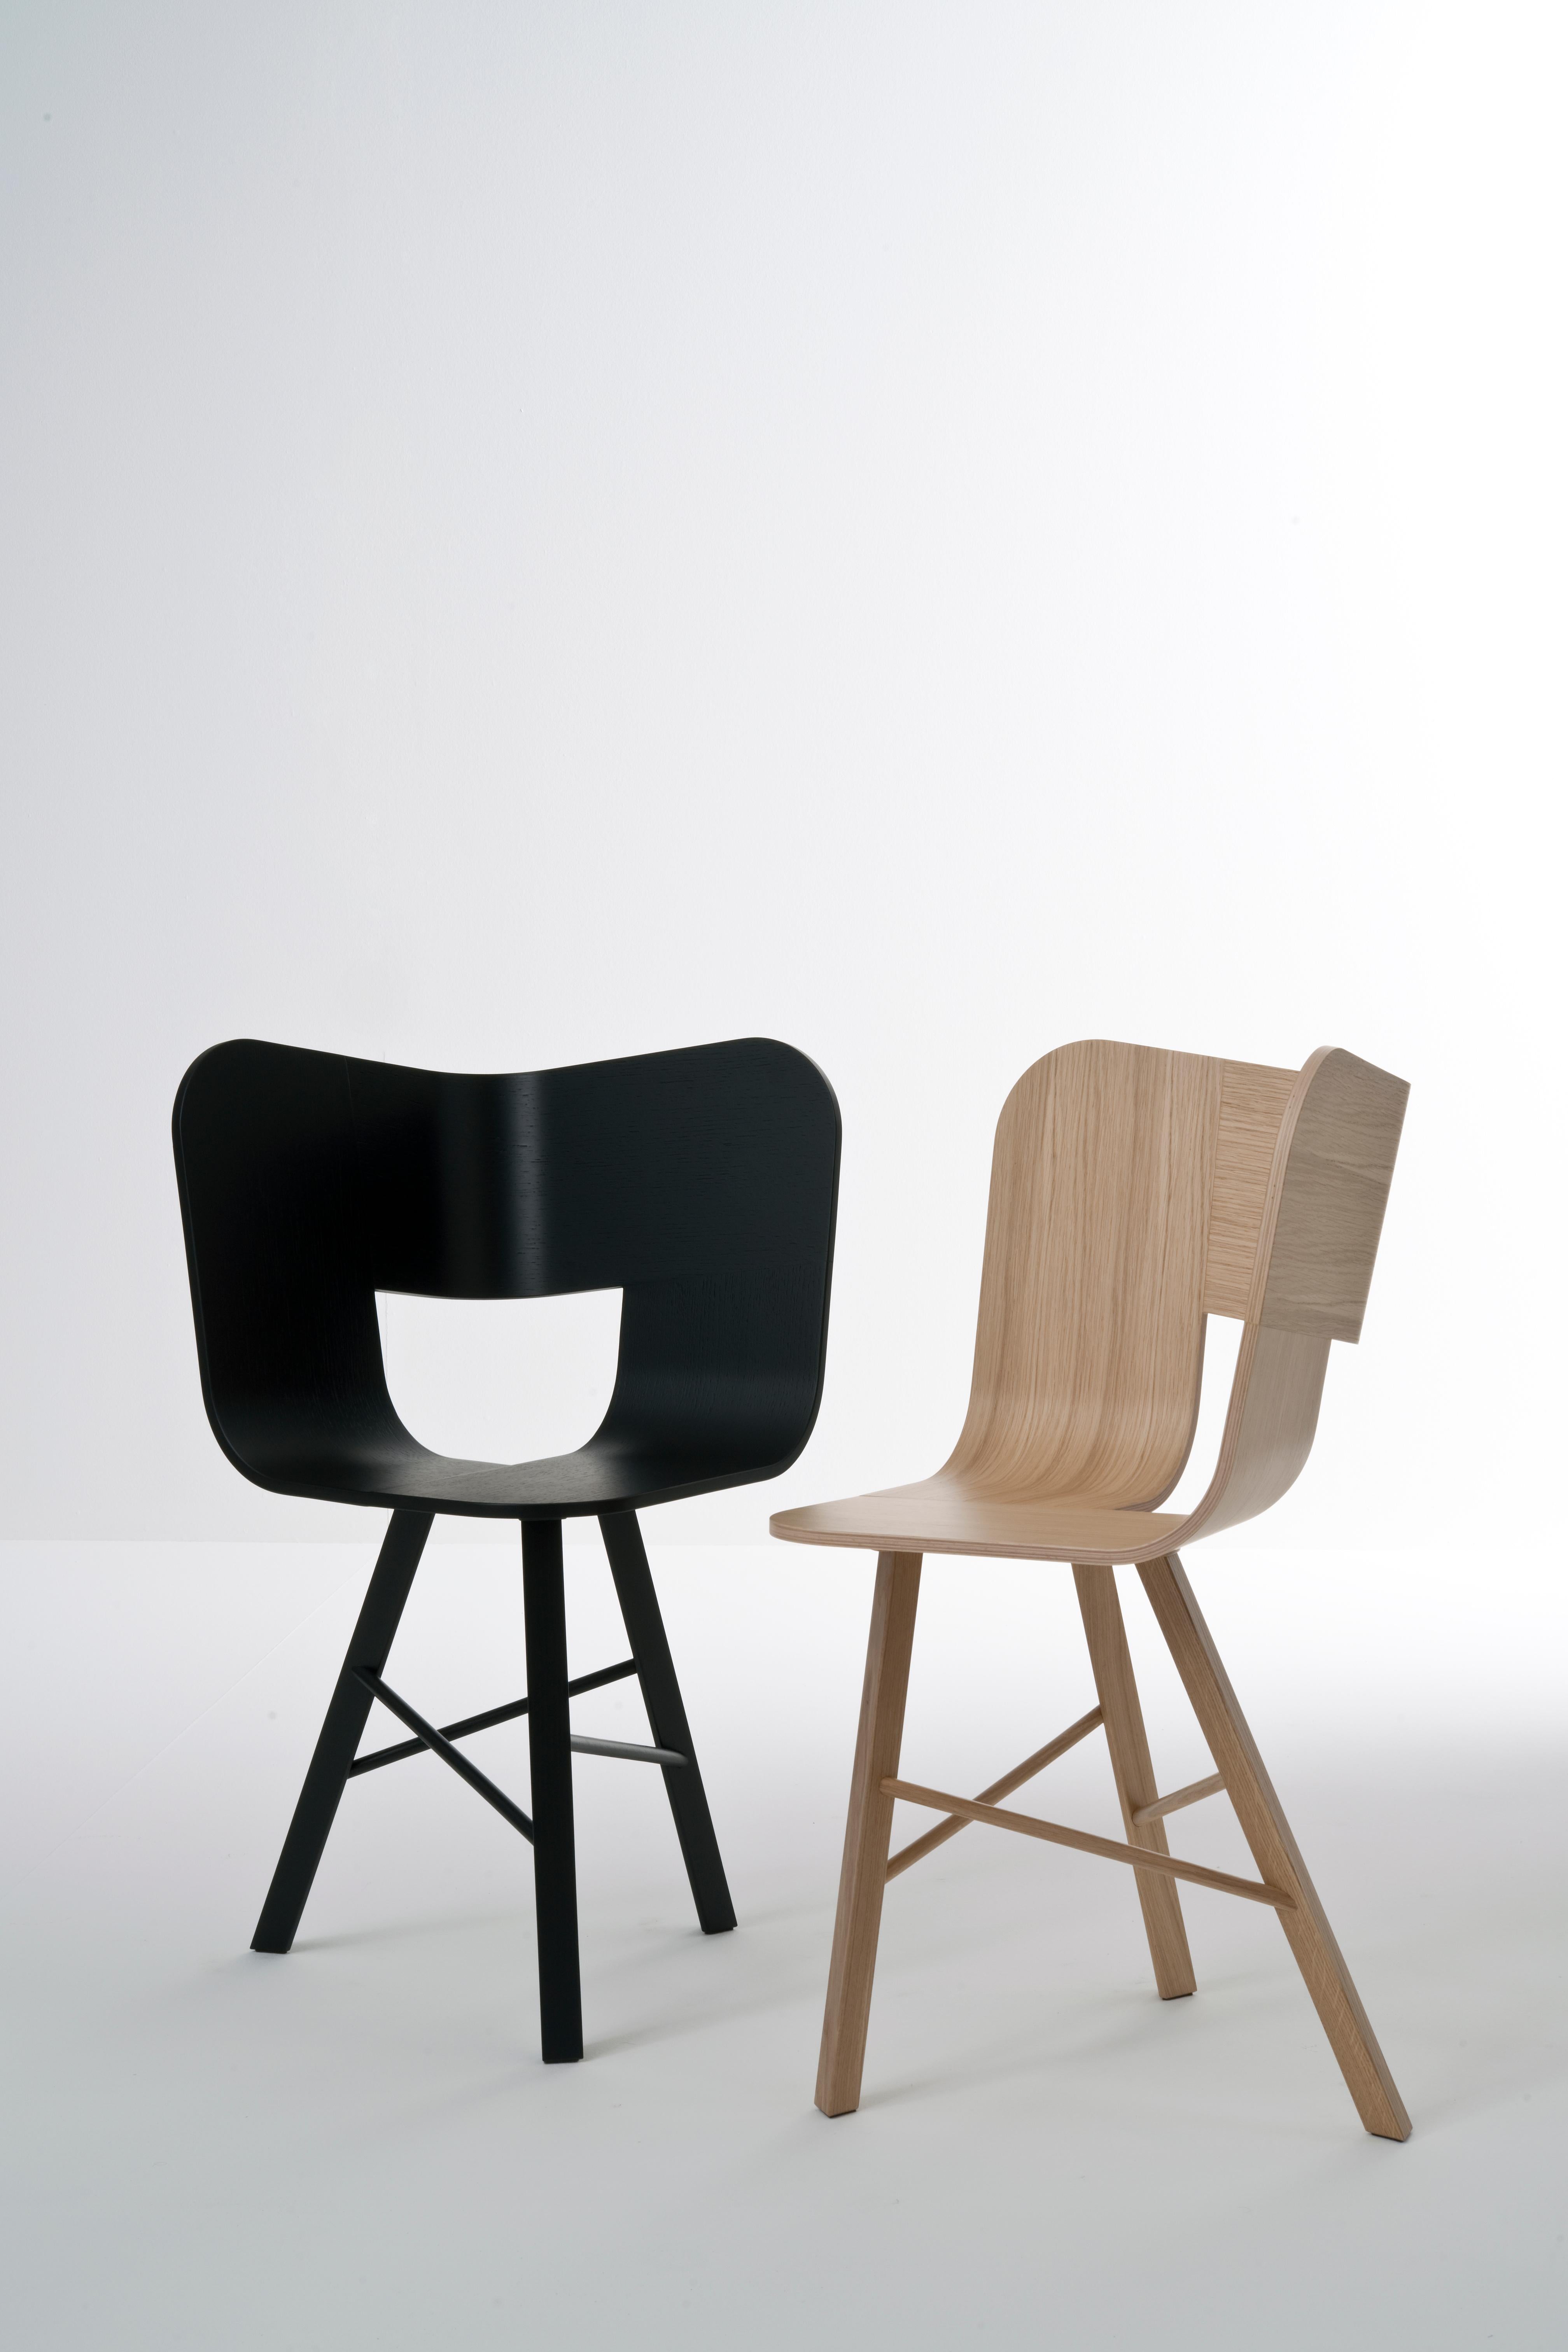 La chaise en bois Tria est l'icône de notre collection. Il s'agit d'une chaise de table, mais de nombreuses personnes l'utilisent comme sculpture d'ambiance, dans une entrée, une chambre, un salon, ou dans n'importe quel coin de la maison. Il